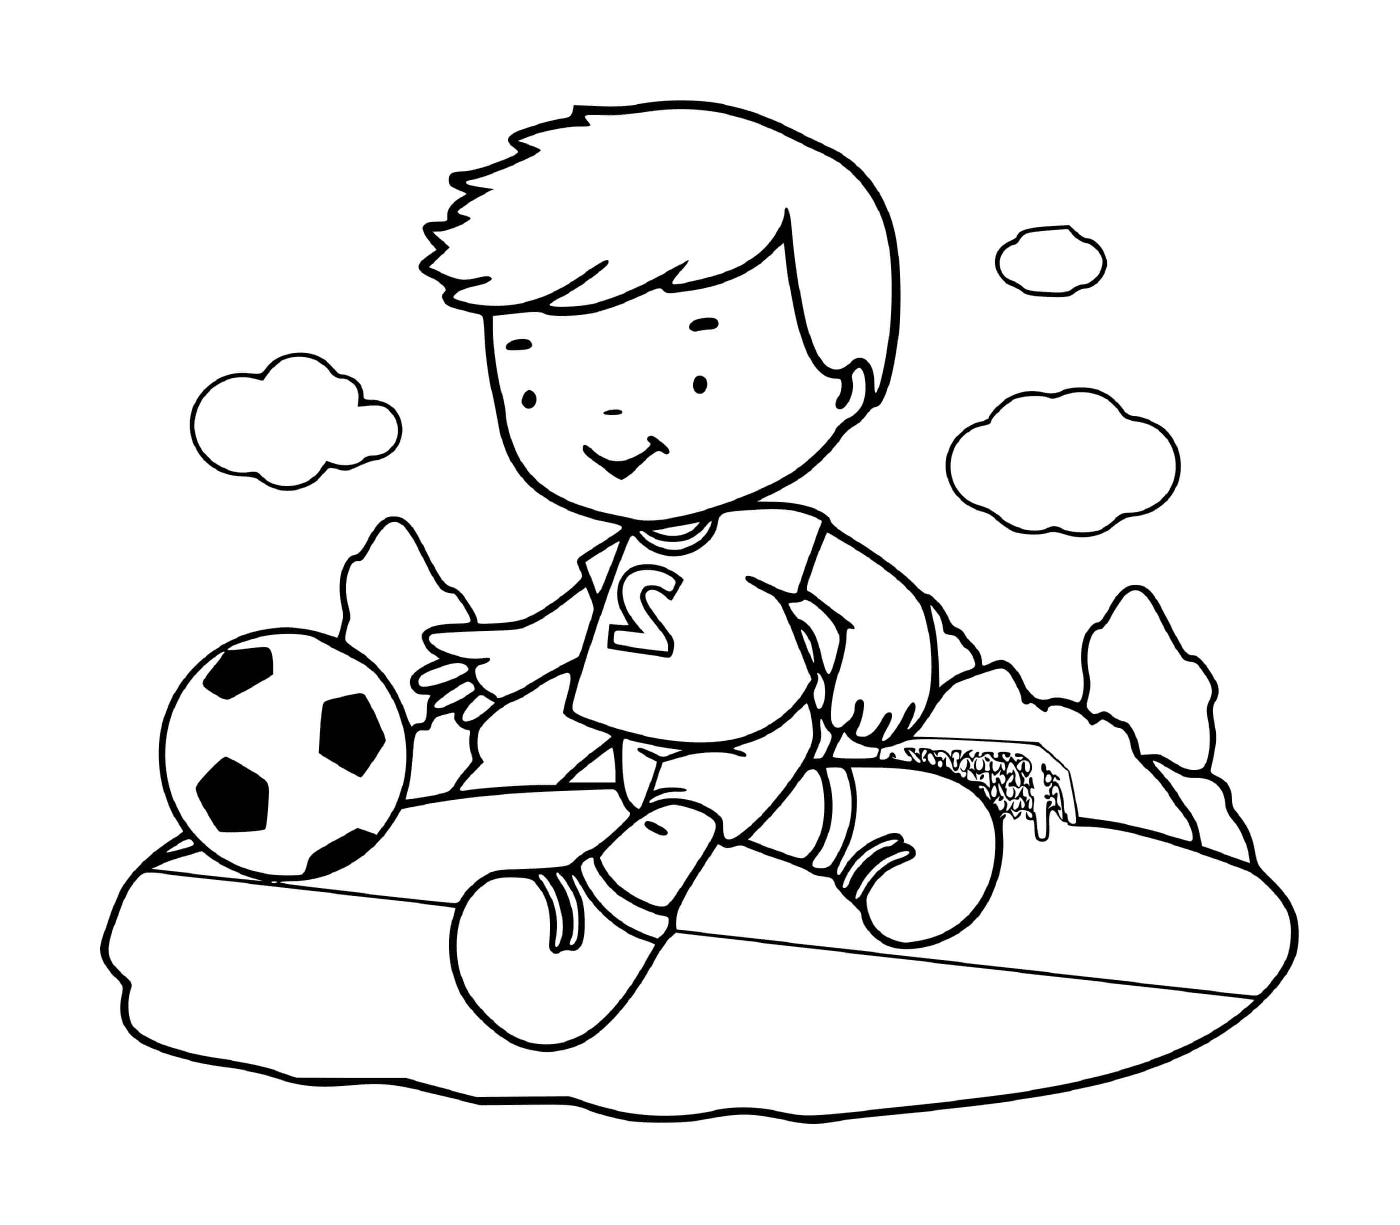  Un niño juega al fútbol con entusiasmo 